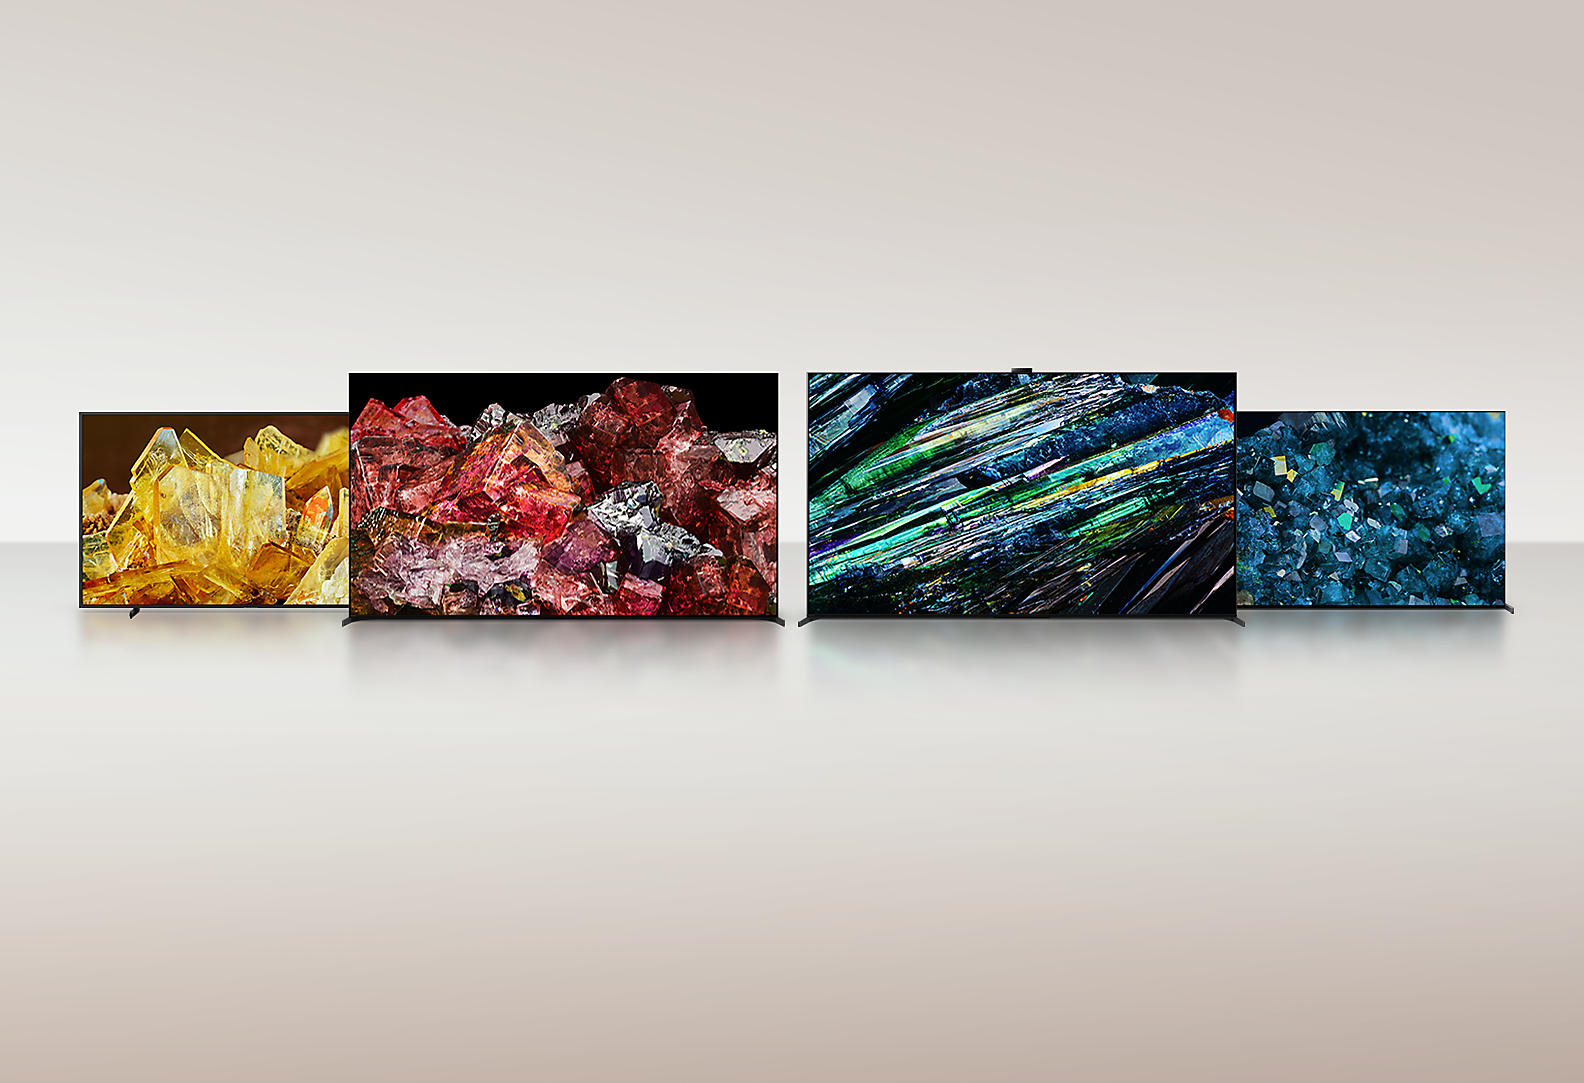 Чотири телевізори BRAVIA XR із неймовірно деталізованими й насиченими зображеннями різних типів кристалів на весь екран